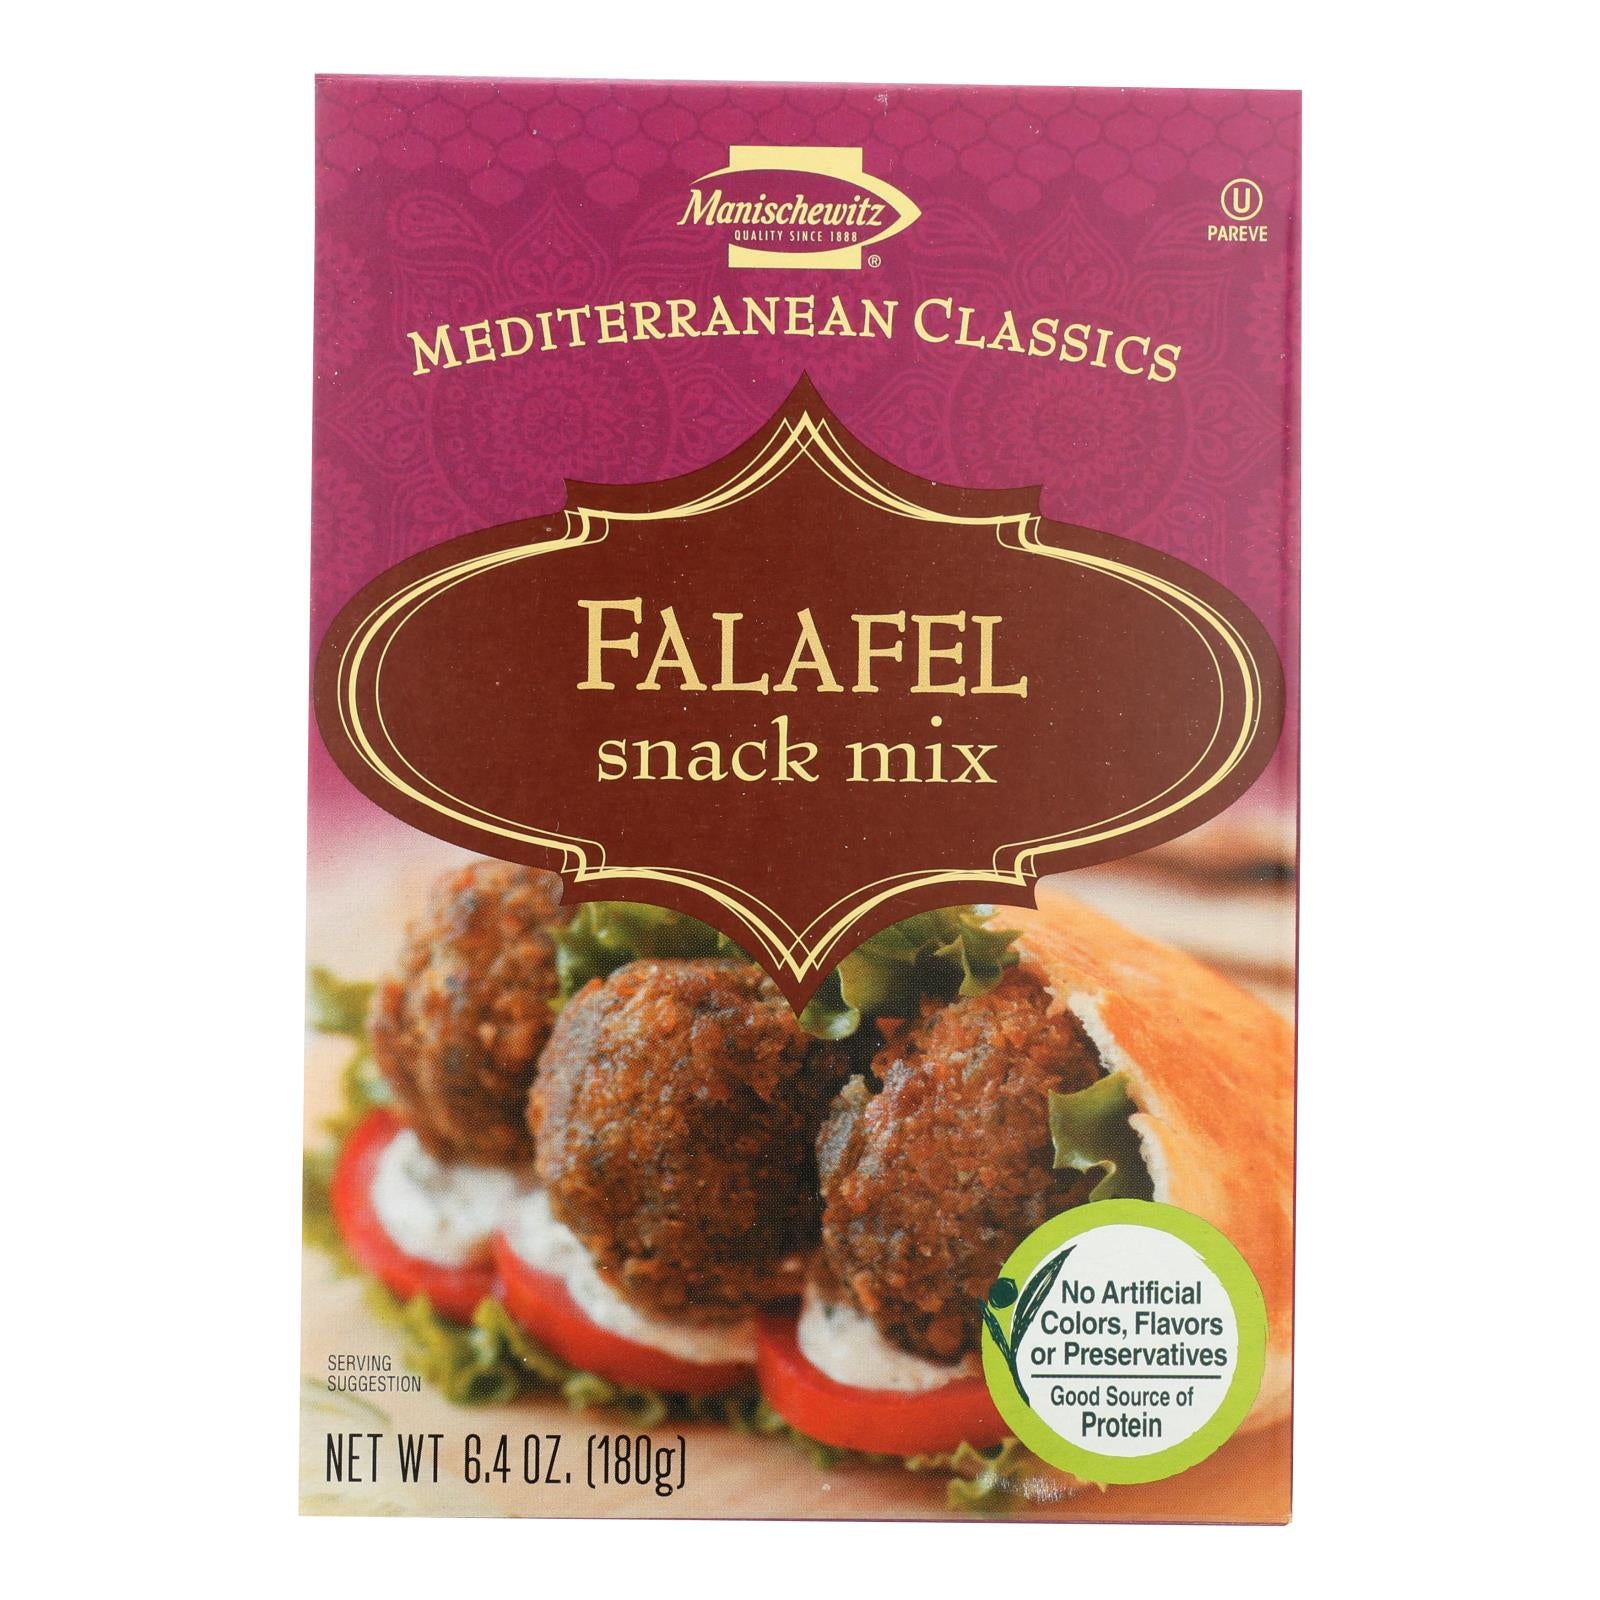 Manischewitz, Manischewitz - Falafel Mediterranean Snack Mix - Caisse de 12 - 6.4 oz. (Paquet de 12)